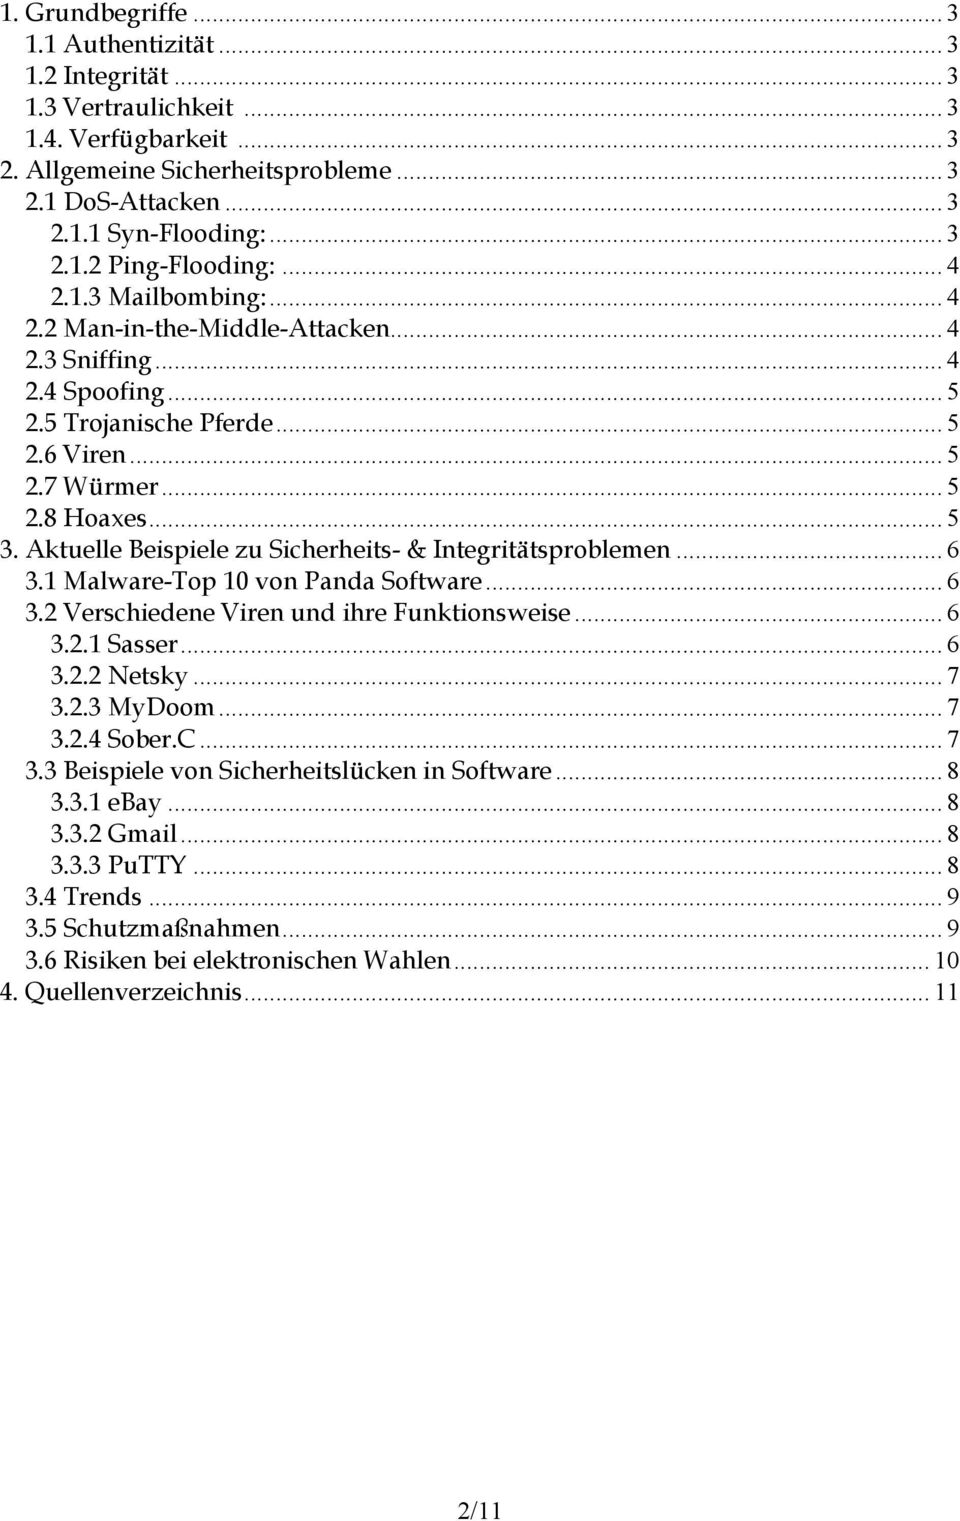 Aktuelle Beispiele zu Sicherheits- & Integritätsproblemen... 6 3.1 Malware-Top 10 von Panda Software... 6 3.2 Verschiedene Viren und ihre Funktionsweise... 6 3.2.1 Sasser... 6 3.2.2 Netsky... 7 3.2.3 MyDoom.